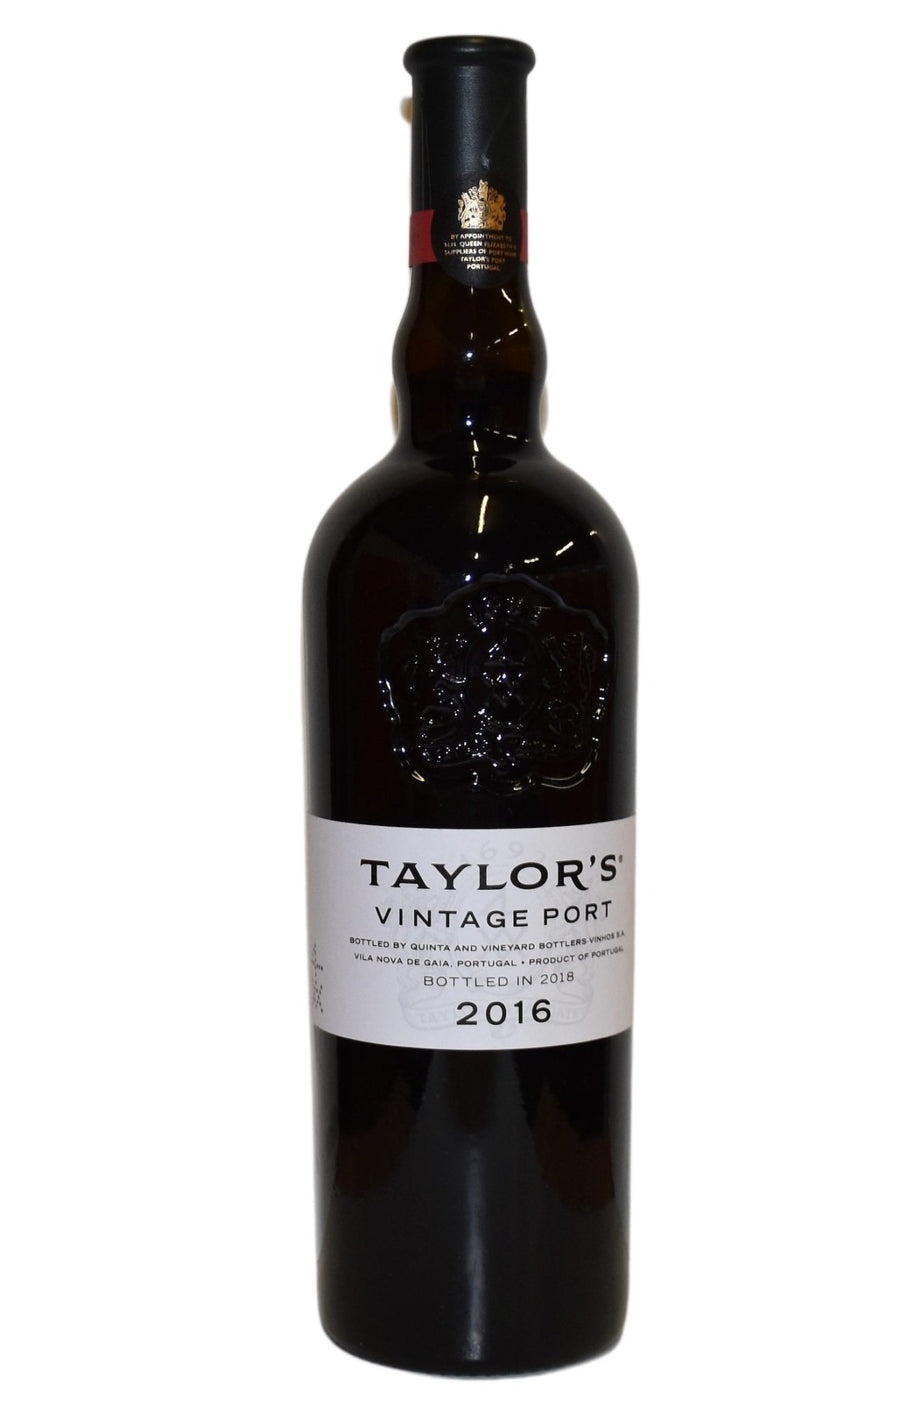 Eine Flasche Taylor's Vintage 2016 0,75l aus dem Jahr 2016.